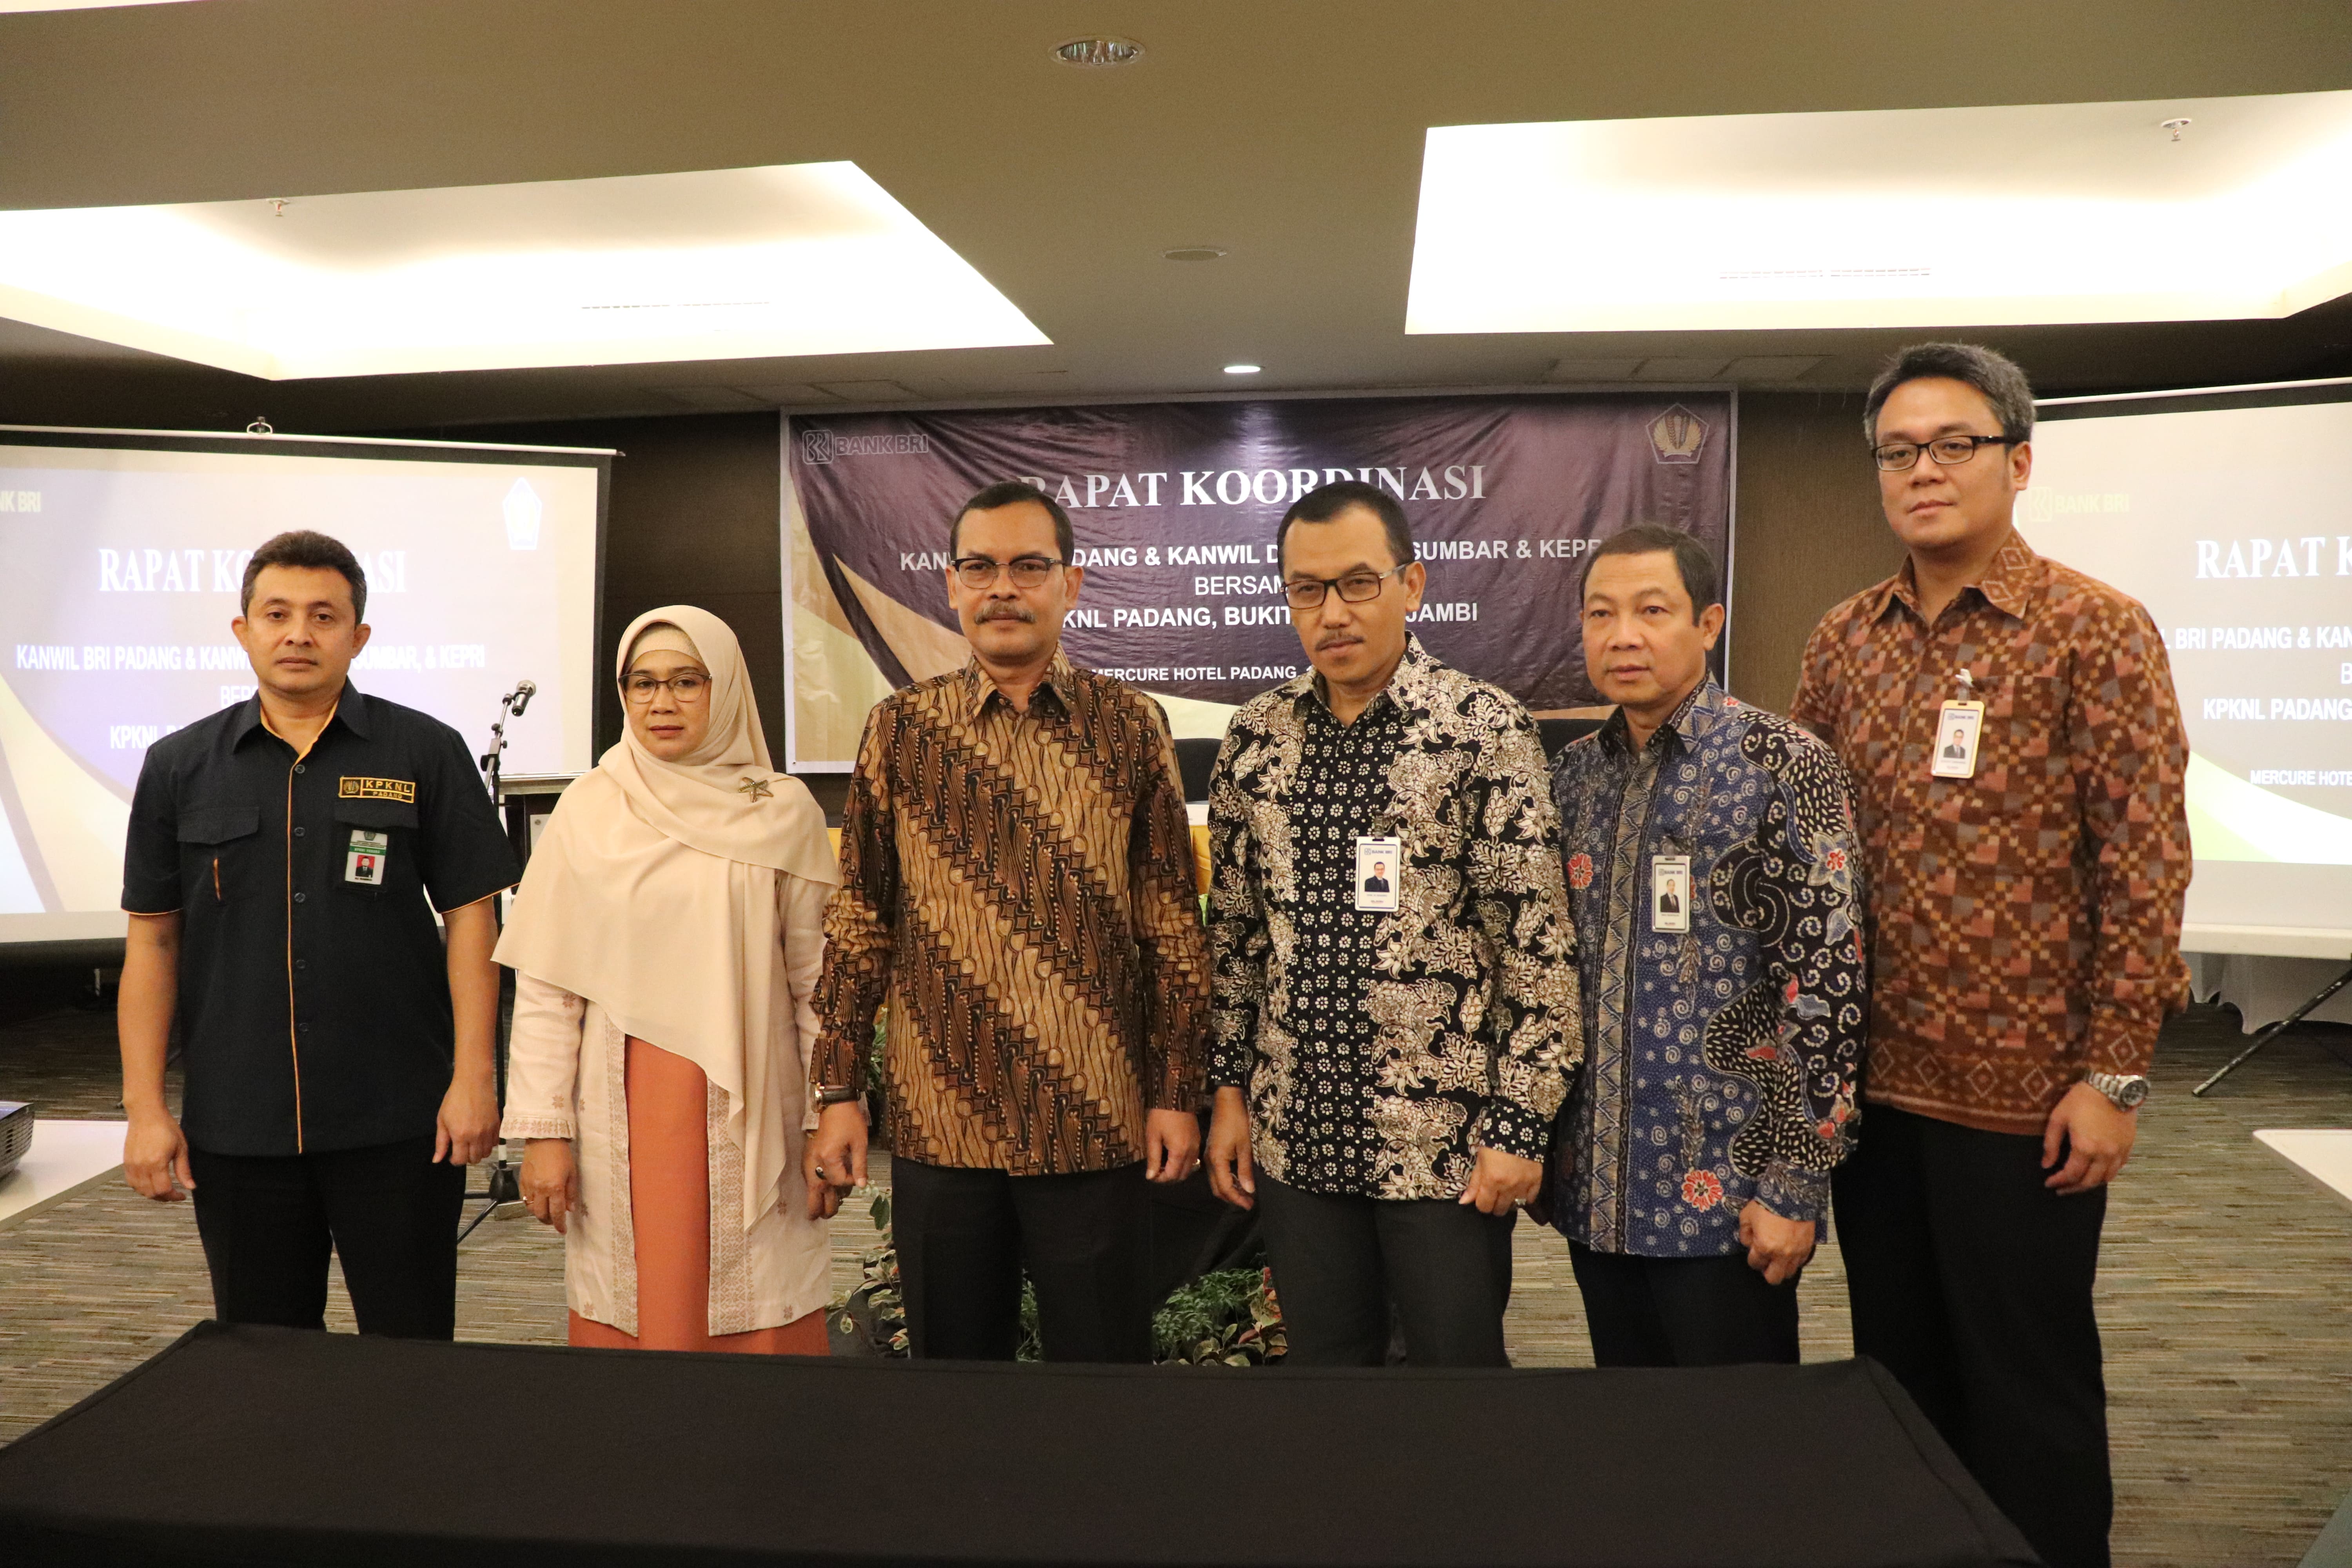 Rapat Koordinasi Kanwil BRI Padang dan Kanwil DJKN RSK Bersama KPKNL Padang, Bukittinggi dan Jambi Demi Tingkatkan Capaian Target Lelang